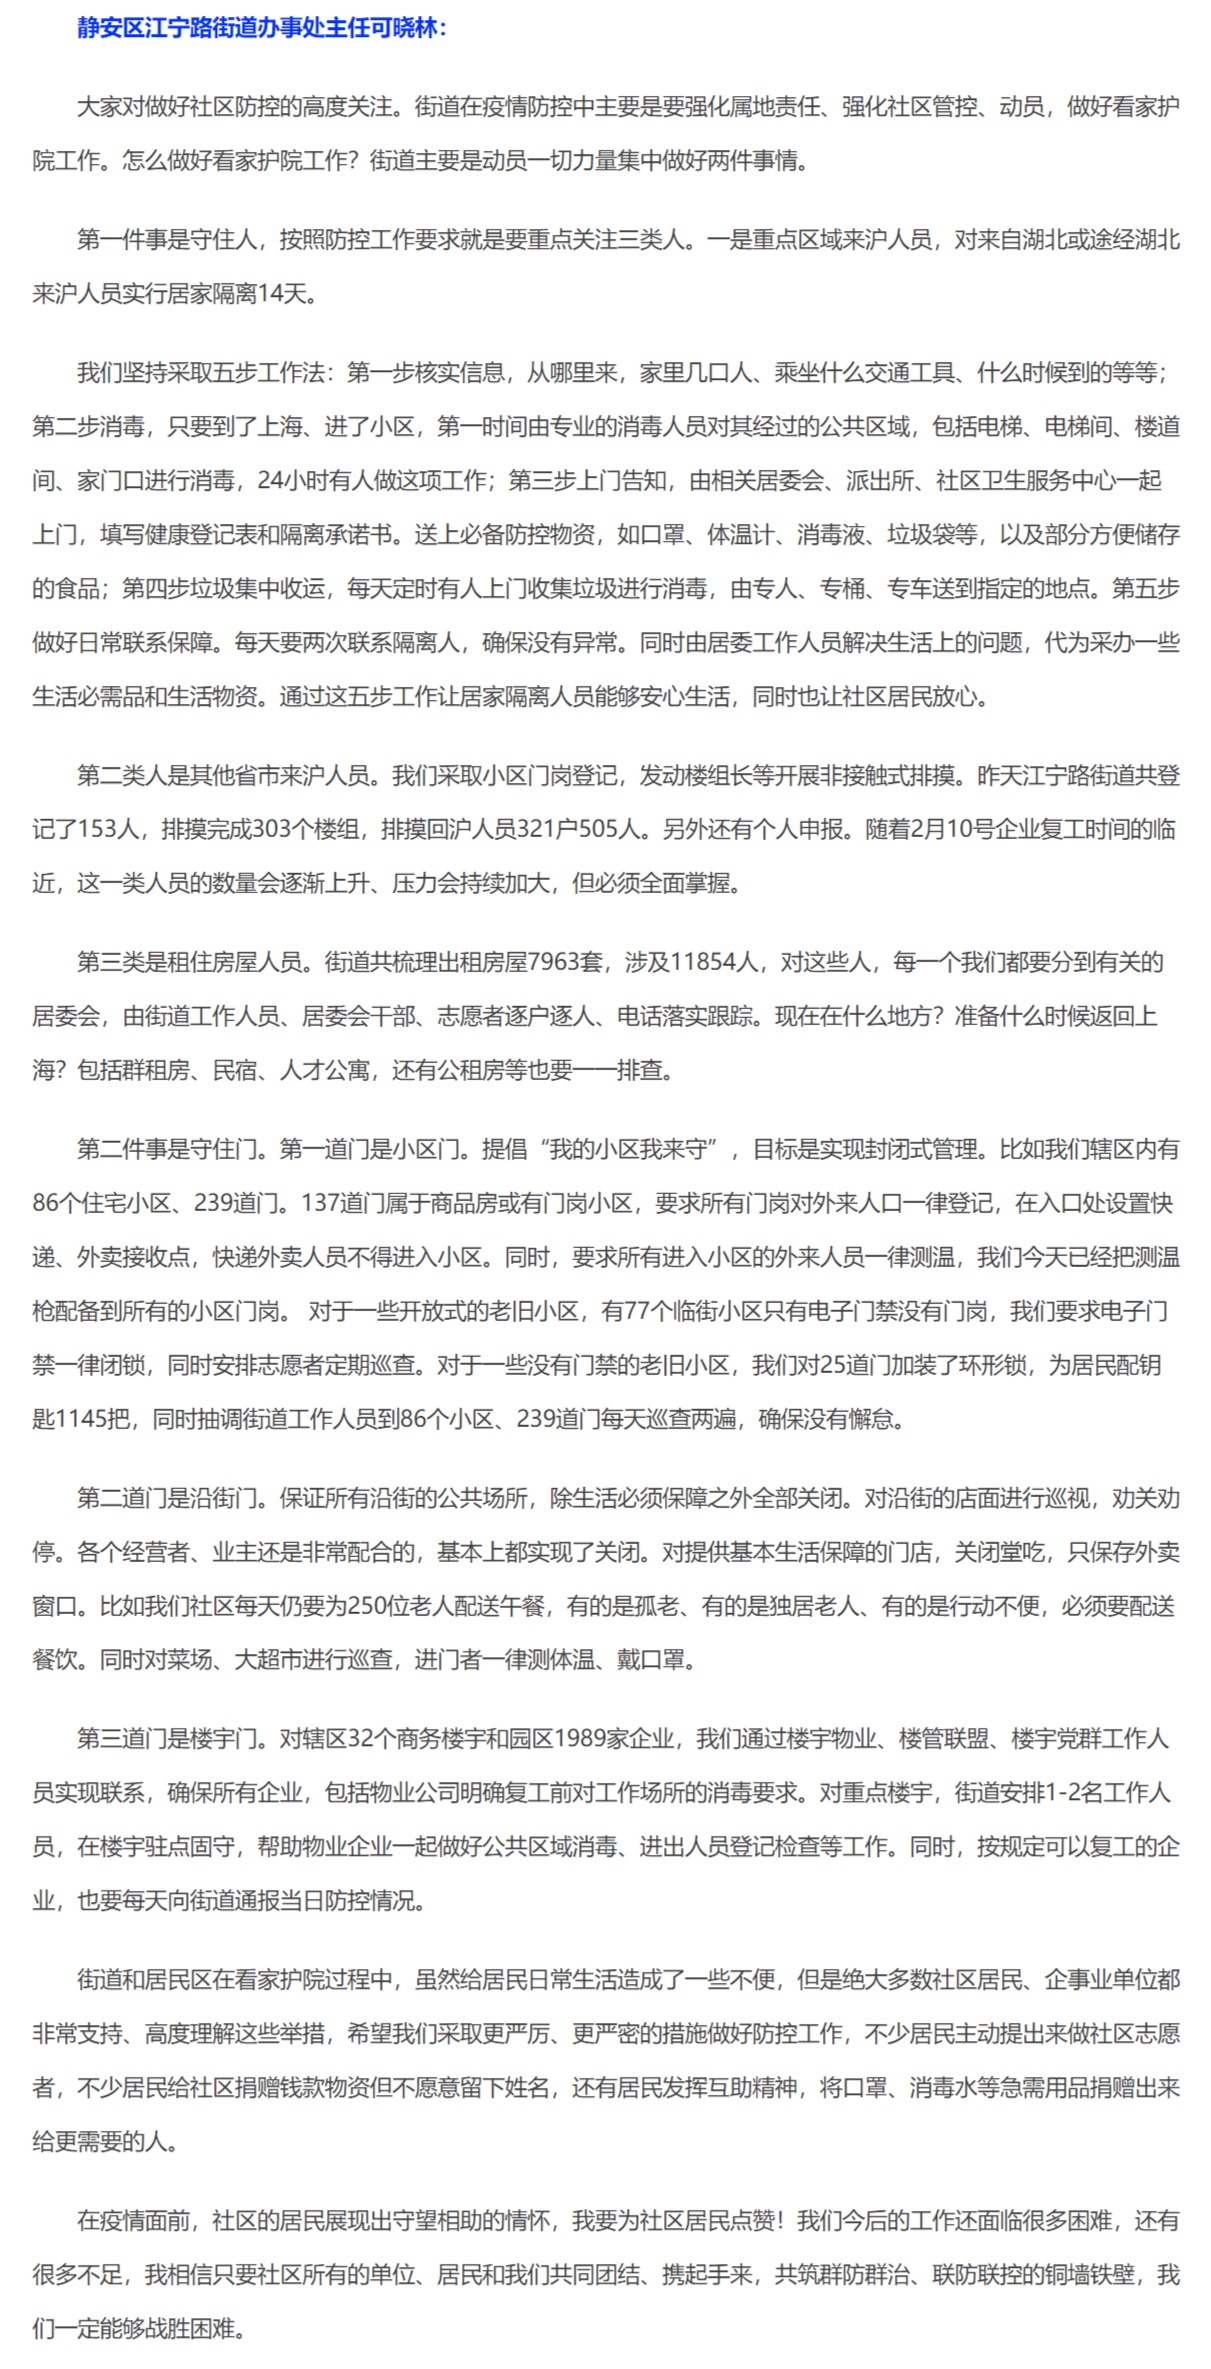 上海政府による新型肺炎に対する疫病予防についての発表